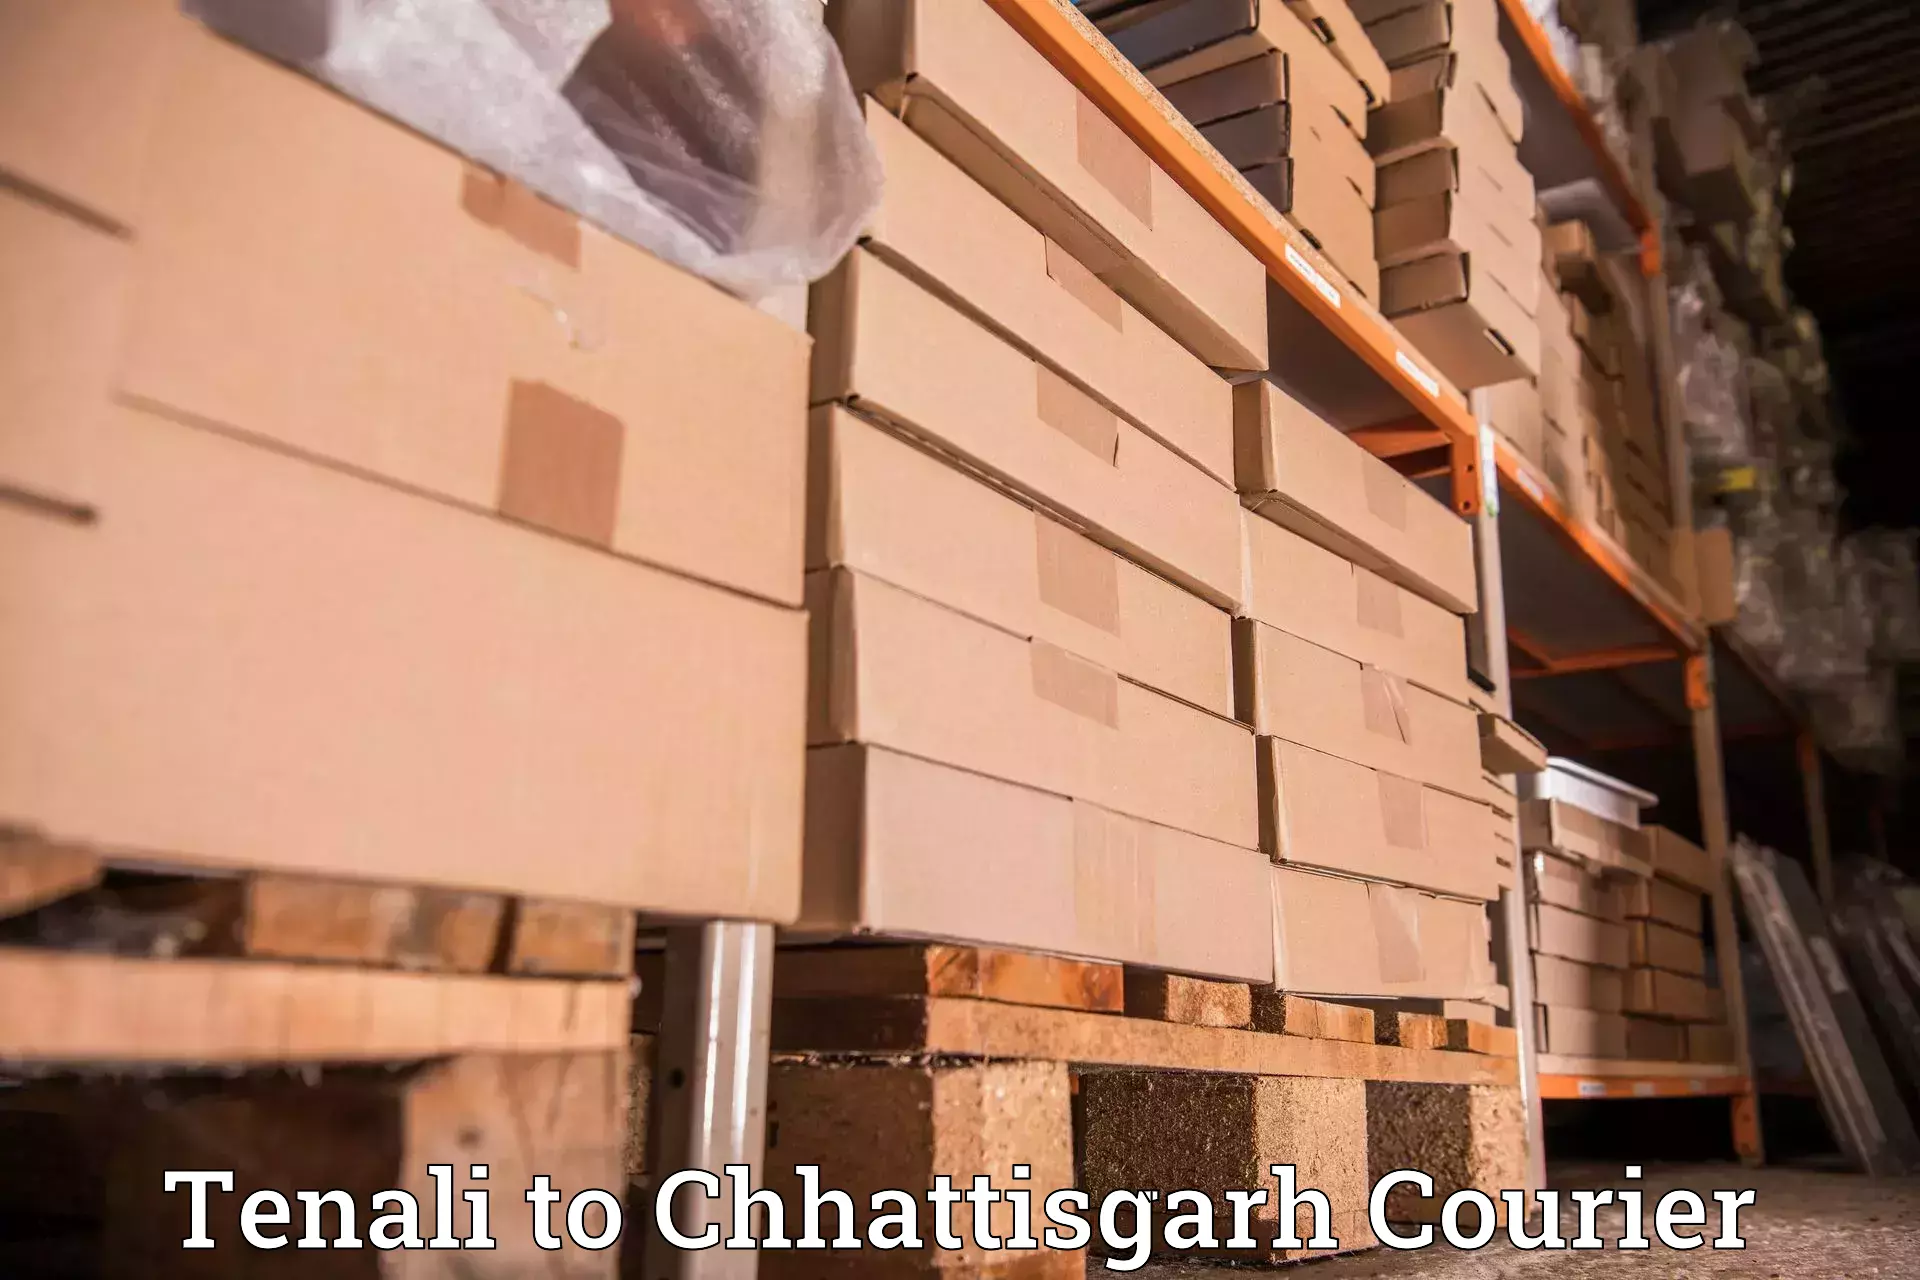 Cash on delivery service Tenali to Chhattisgarh